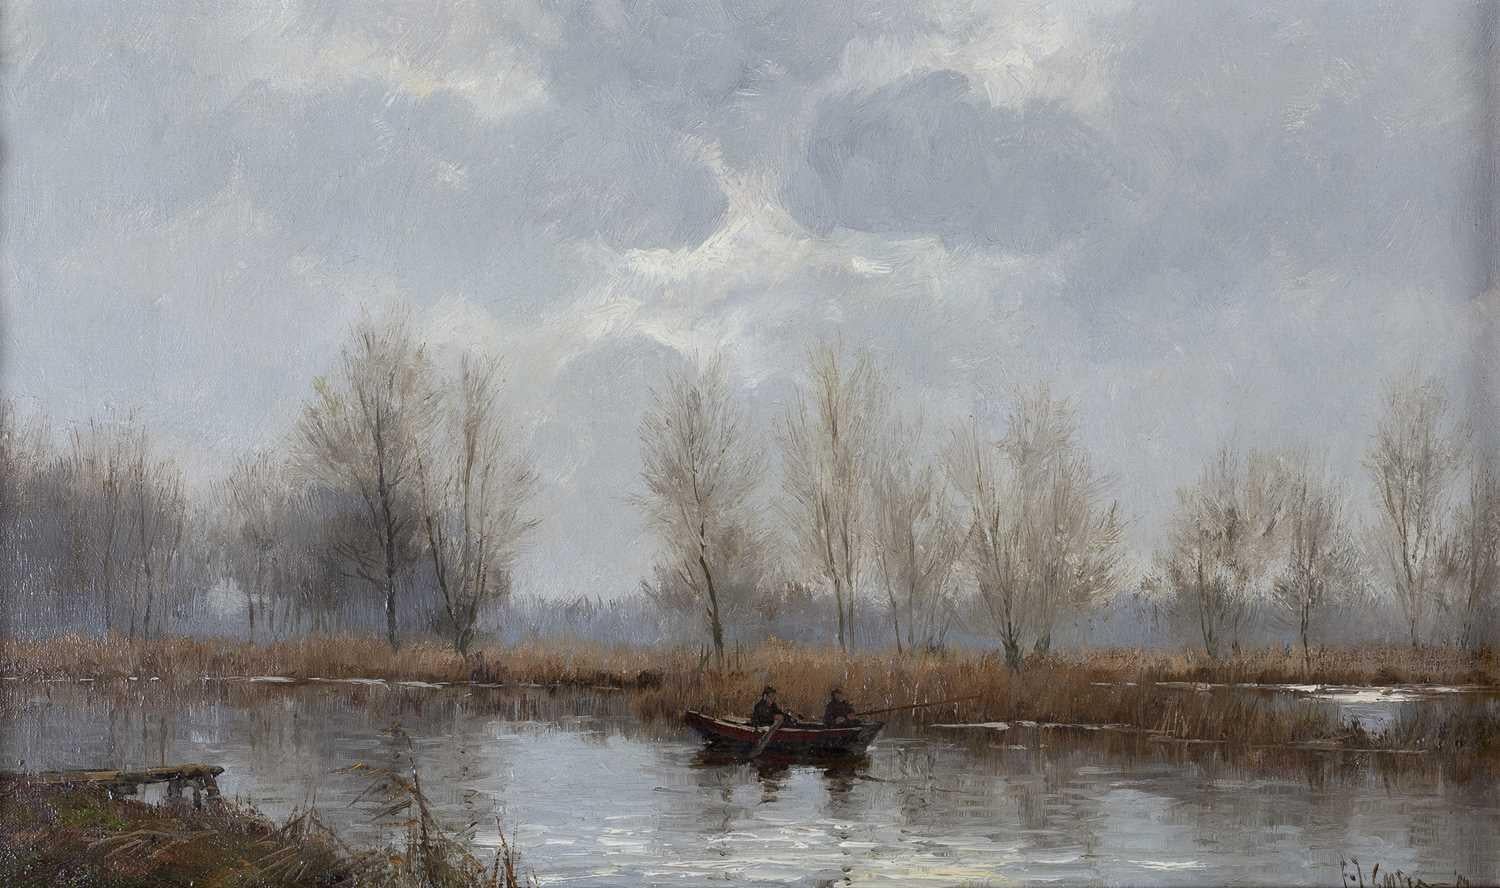 "Fishermen in a Boat on River" - Art by Frits Johan Goosen